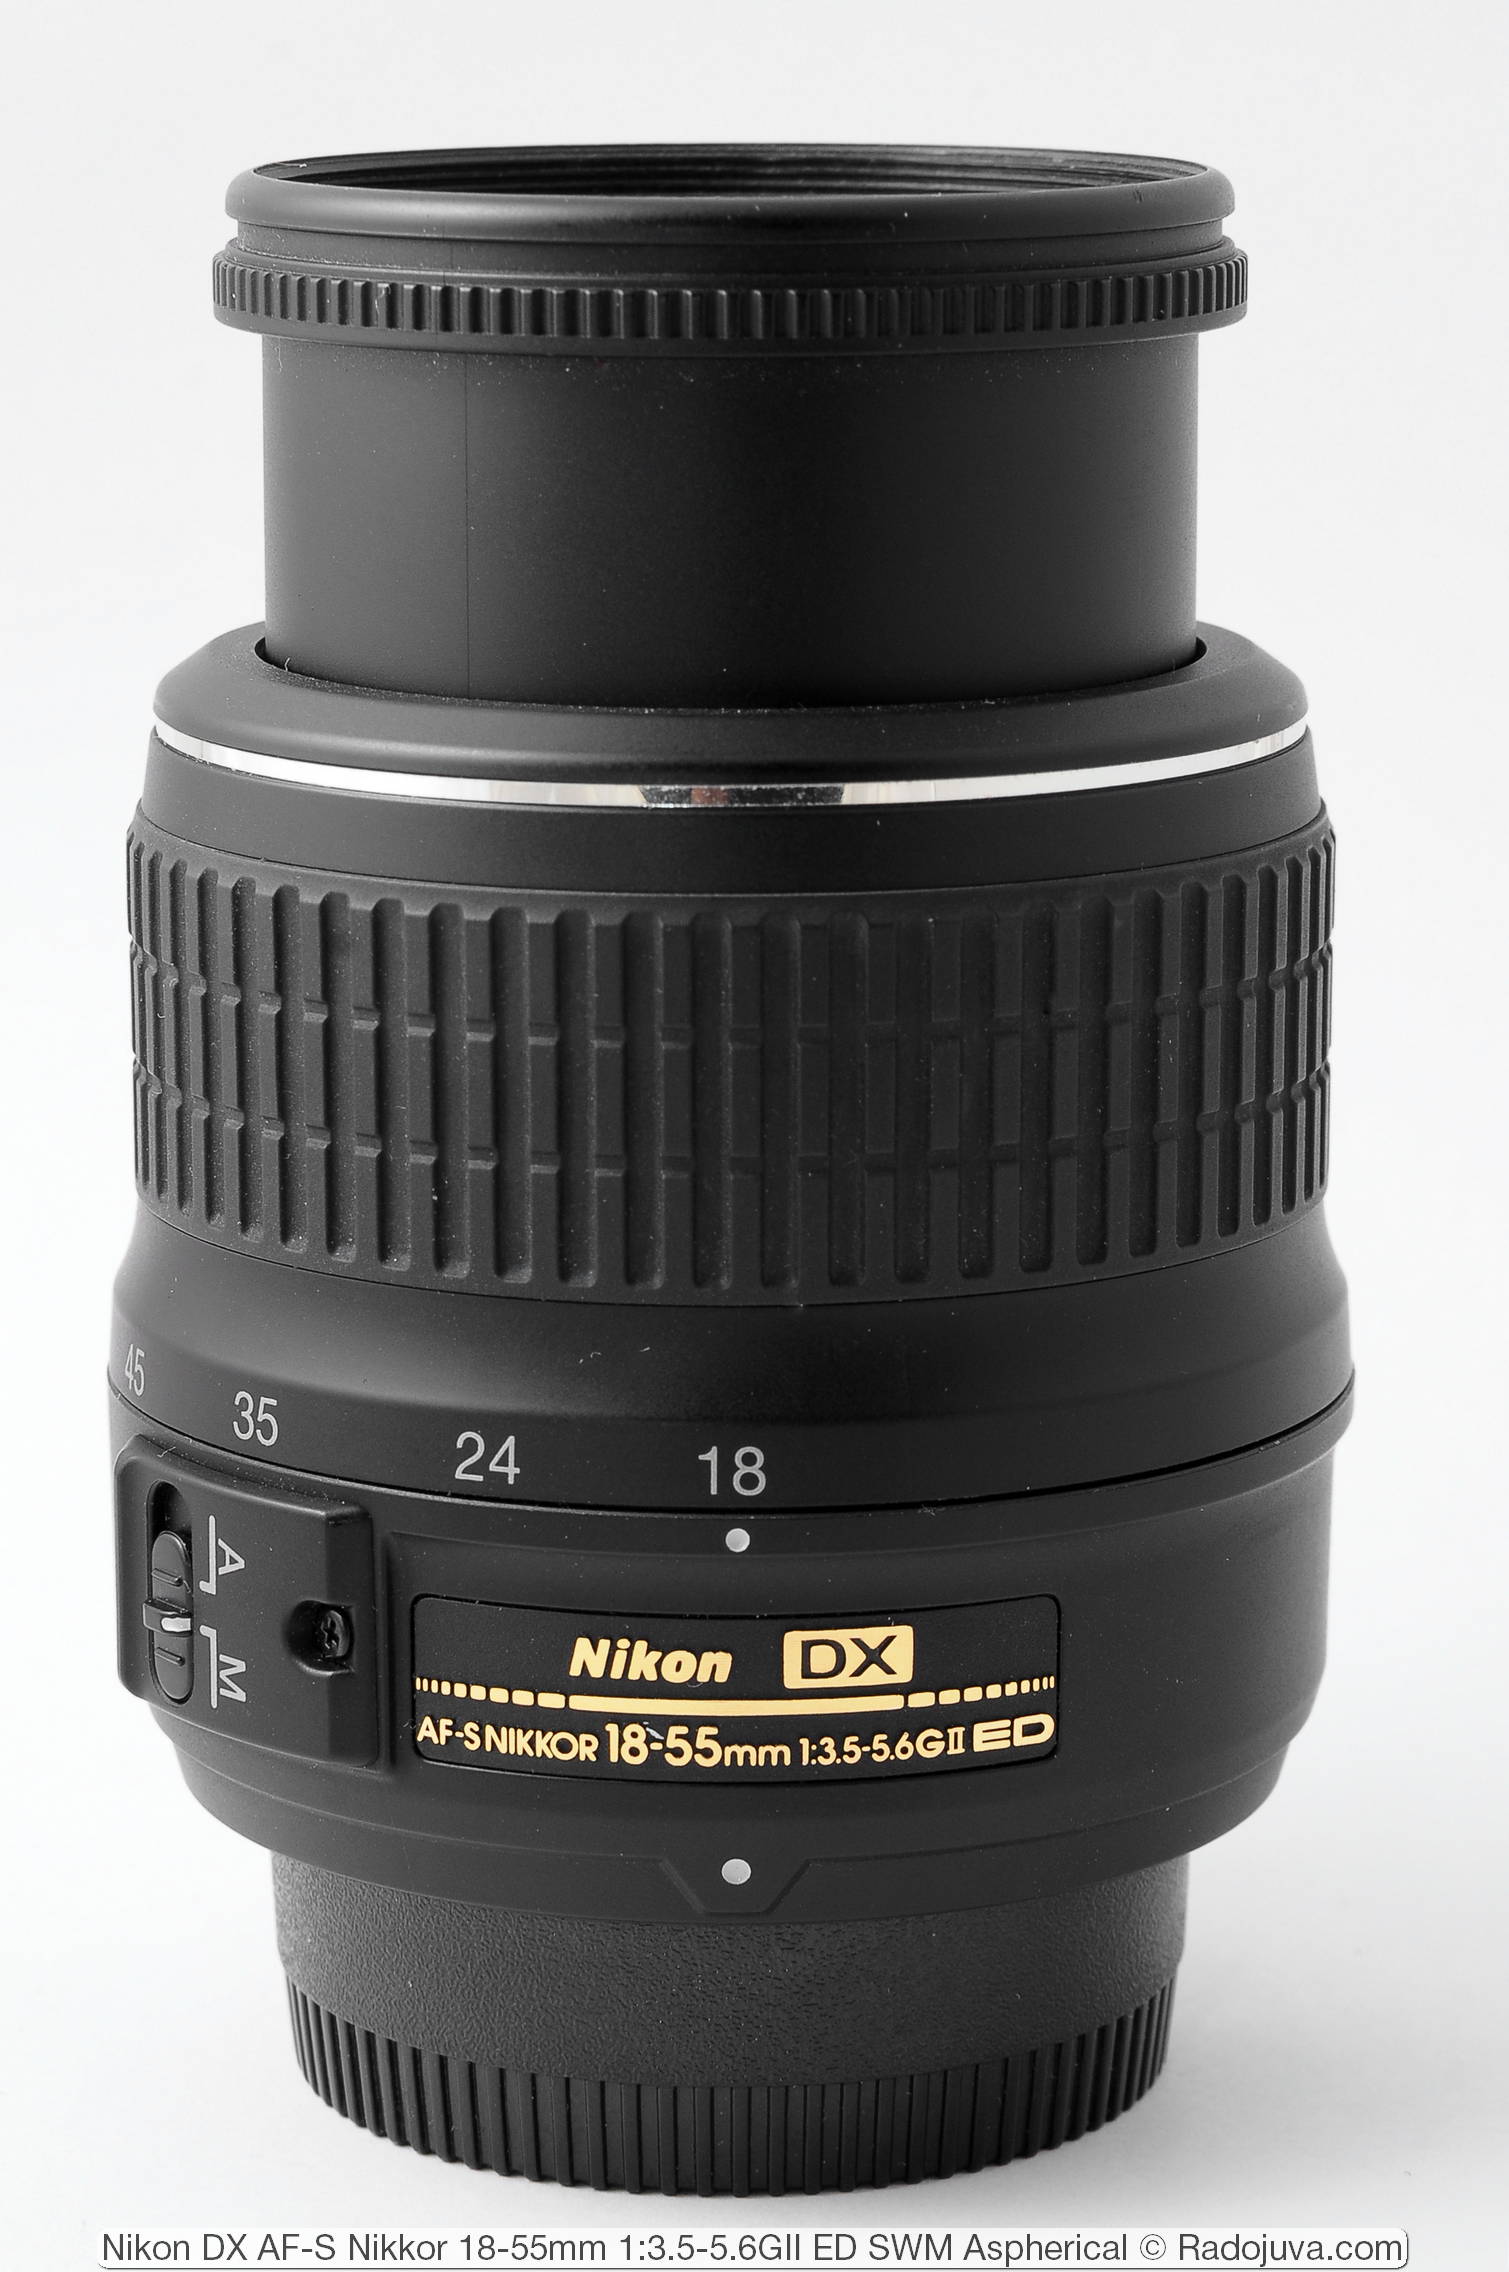 Nikon DX AF-S Nikkor 18-55mm 1: 3.5-5.6GII ED SWM Aspherical